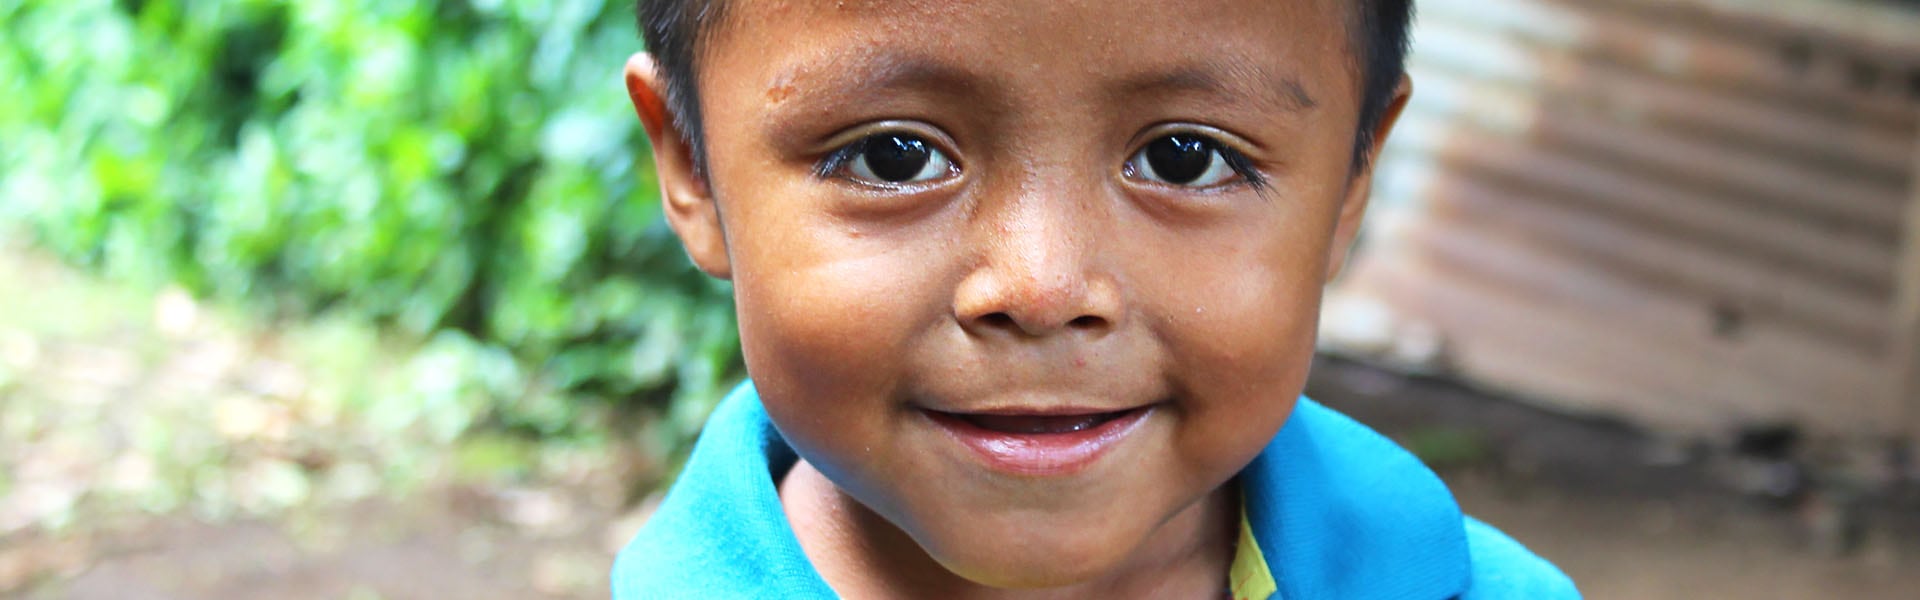 A boy smiling outdoors in El Salvador